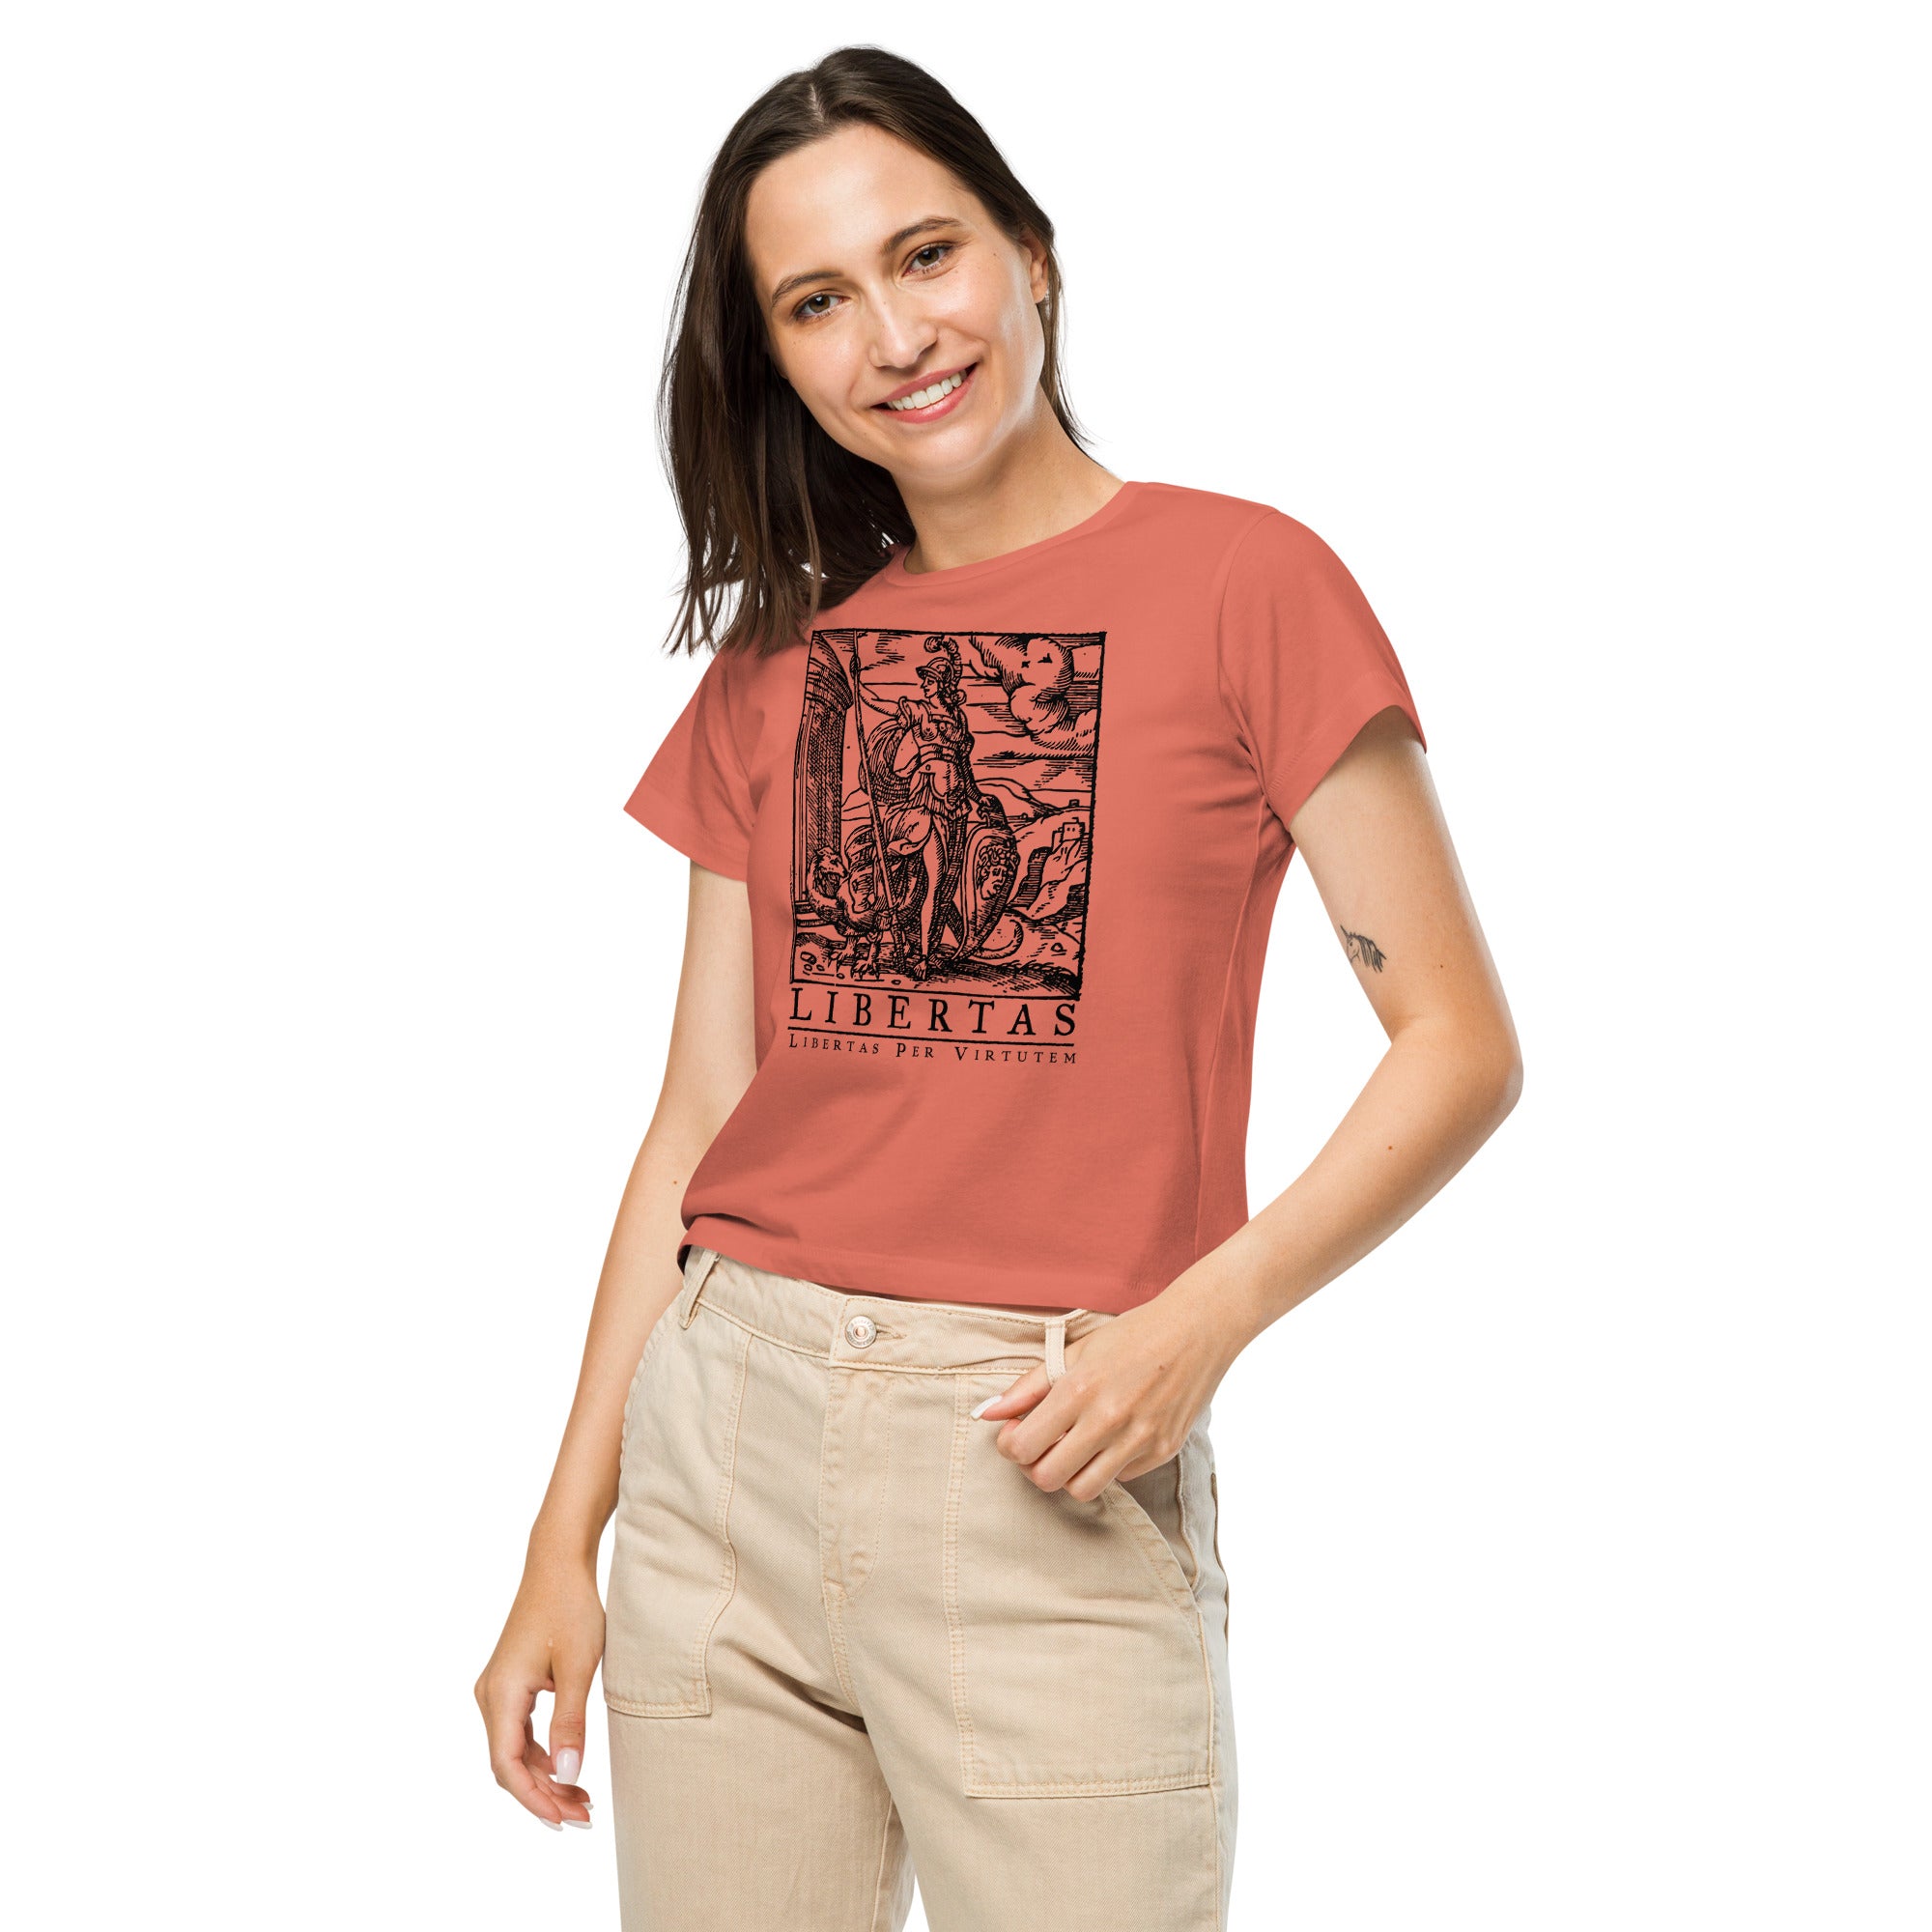 Libertas Freedom Through Virtue Women’s High-Waisted T-shirt